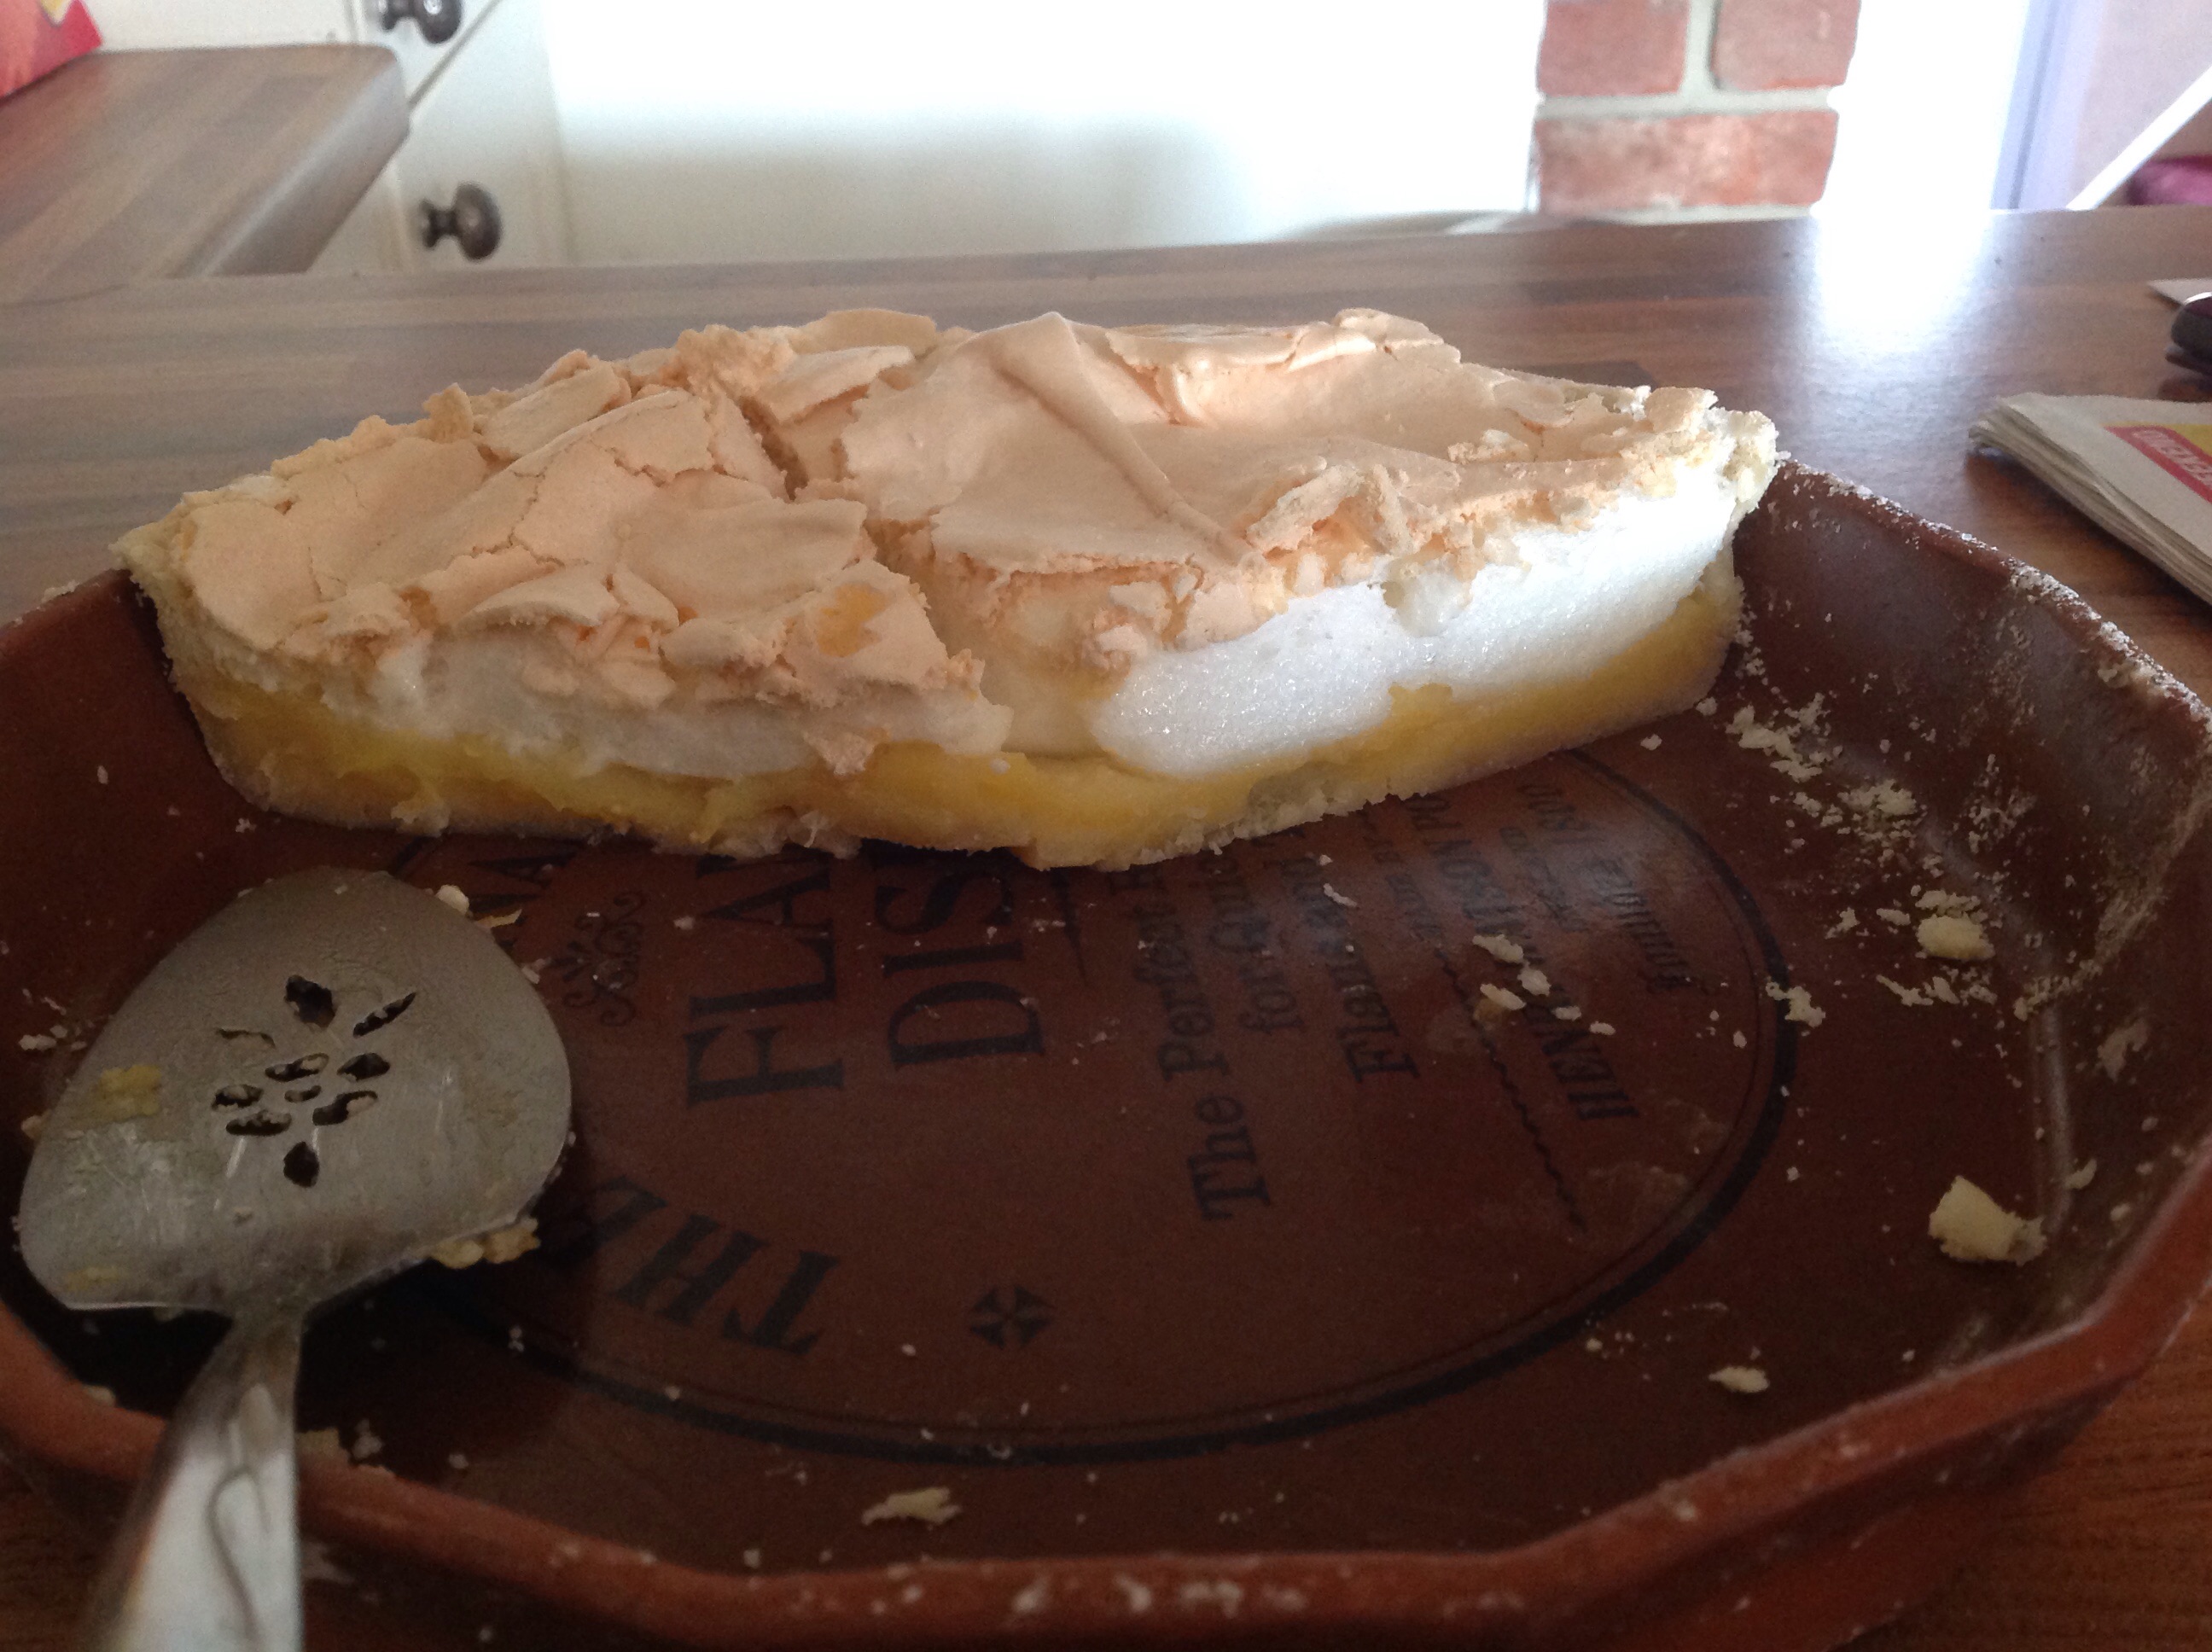 Lyse Lemieux's eggciting Lemon Meringue Pie looks delicious